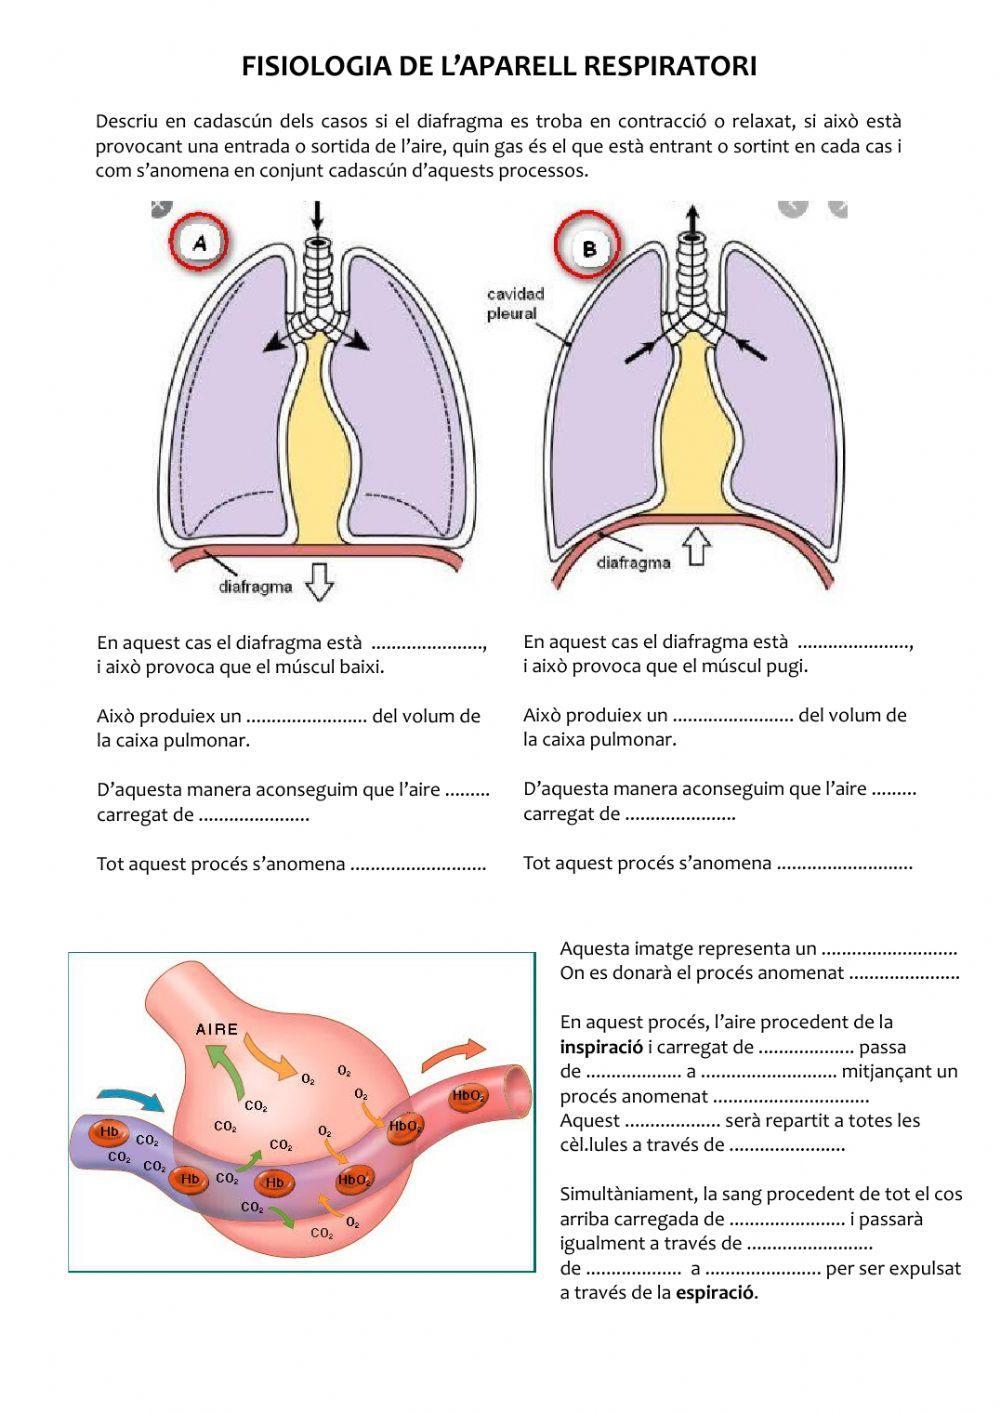 Fisiologia del respiratori